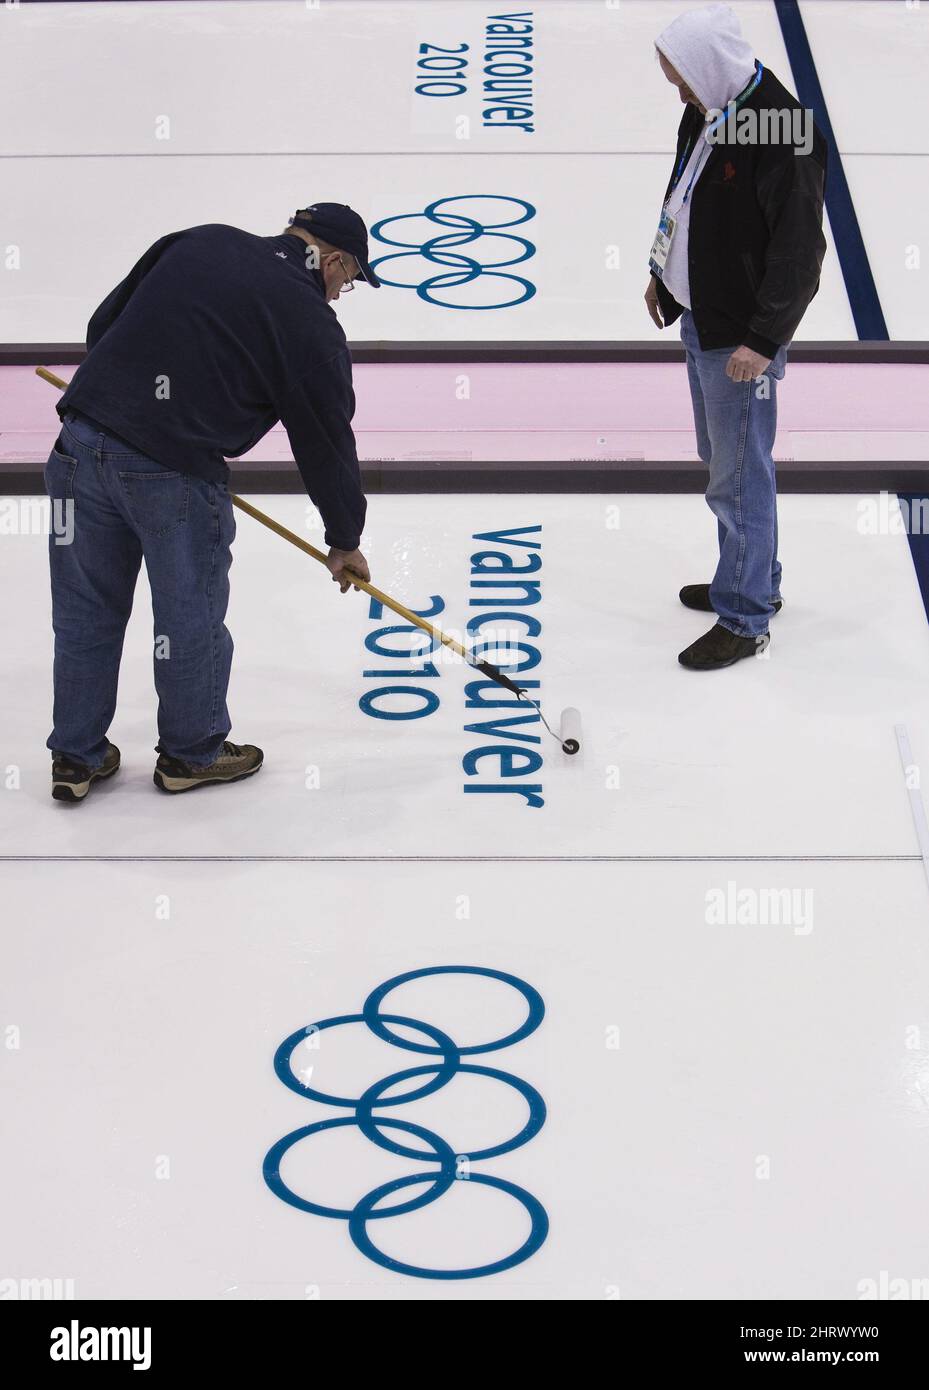 Les travailleurs de la glace roulent sur l'eau au-dessus des emblèmes des Jeux olympiques d'hiver au Centre olympique de Vancouver, où le curling aura lieu le mardi 9 février 2010 aux Jeux olympiques d'hiver de 2010 à Vancouver. (Photo de la PB/la presse canadienne, Nathan Denette) Banque D'Images